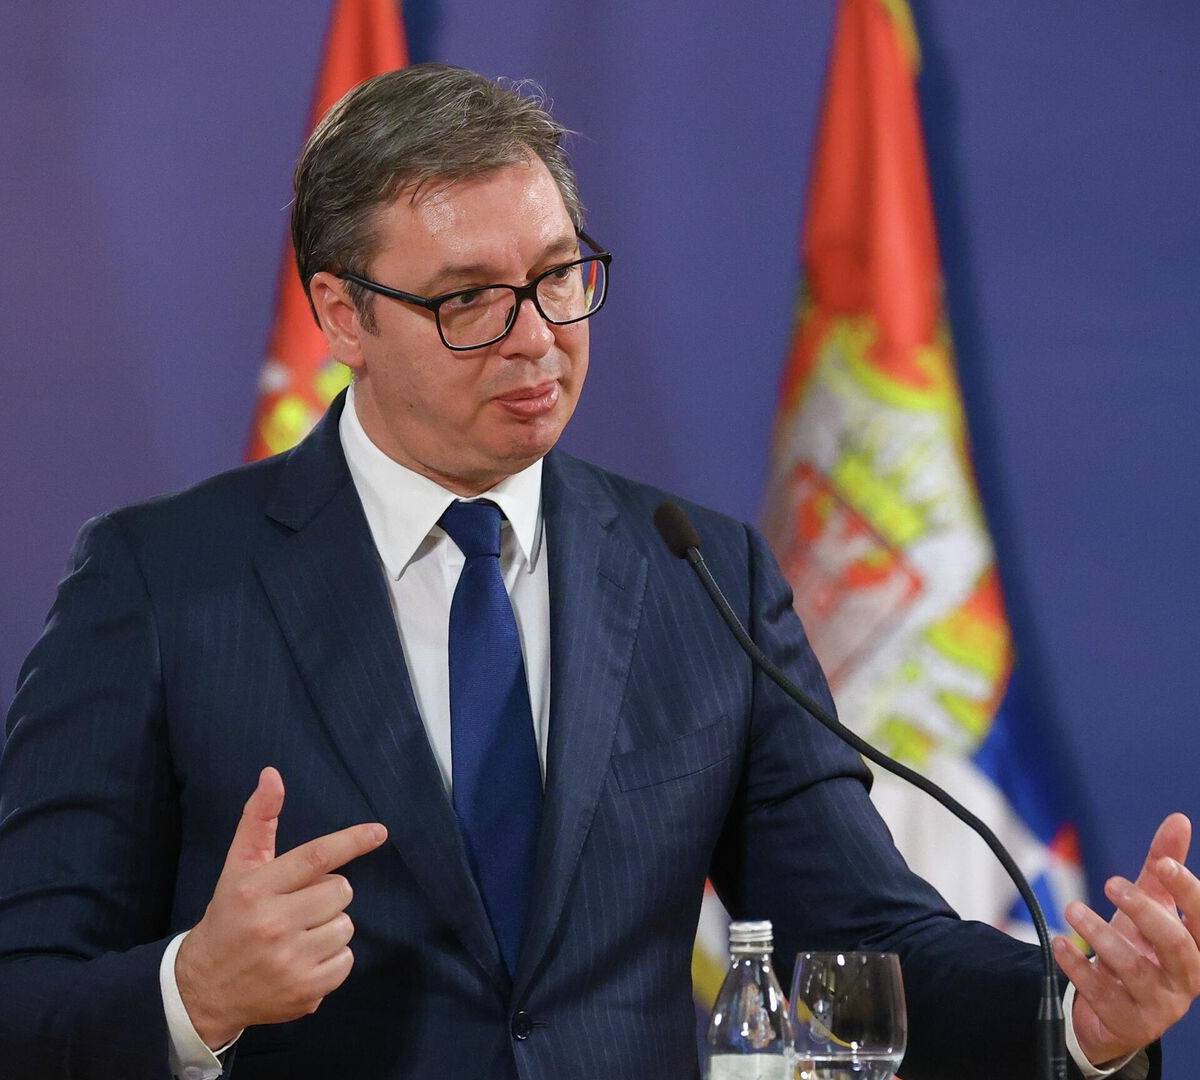 Вучич: Сербия не ввела ни единой санкции против РФ